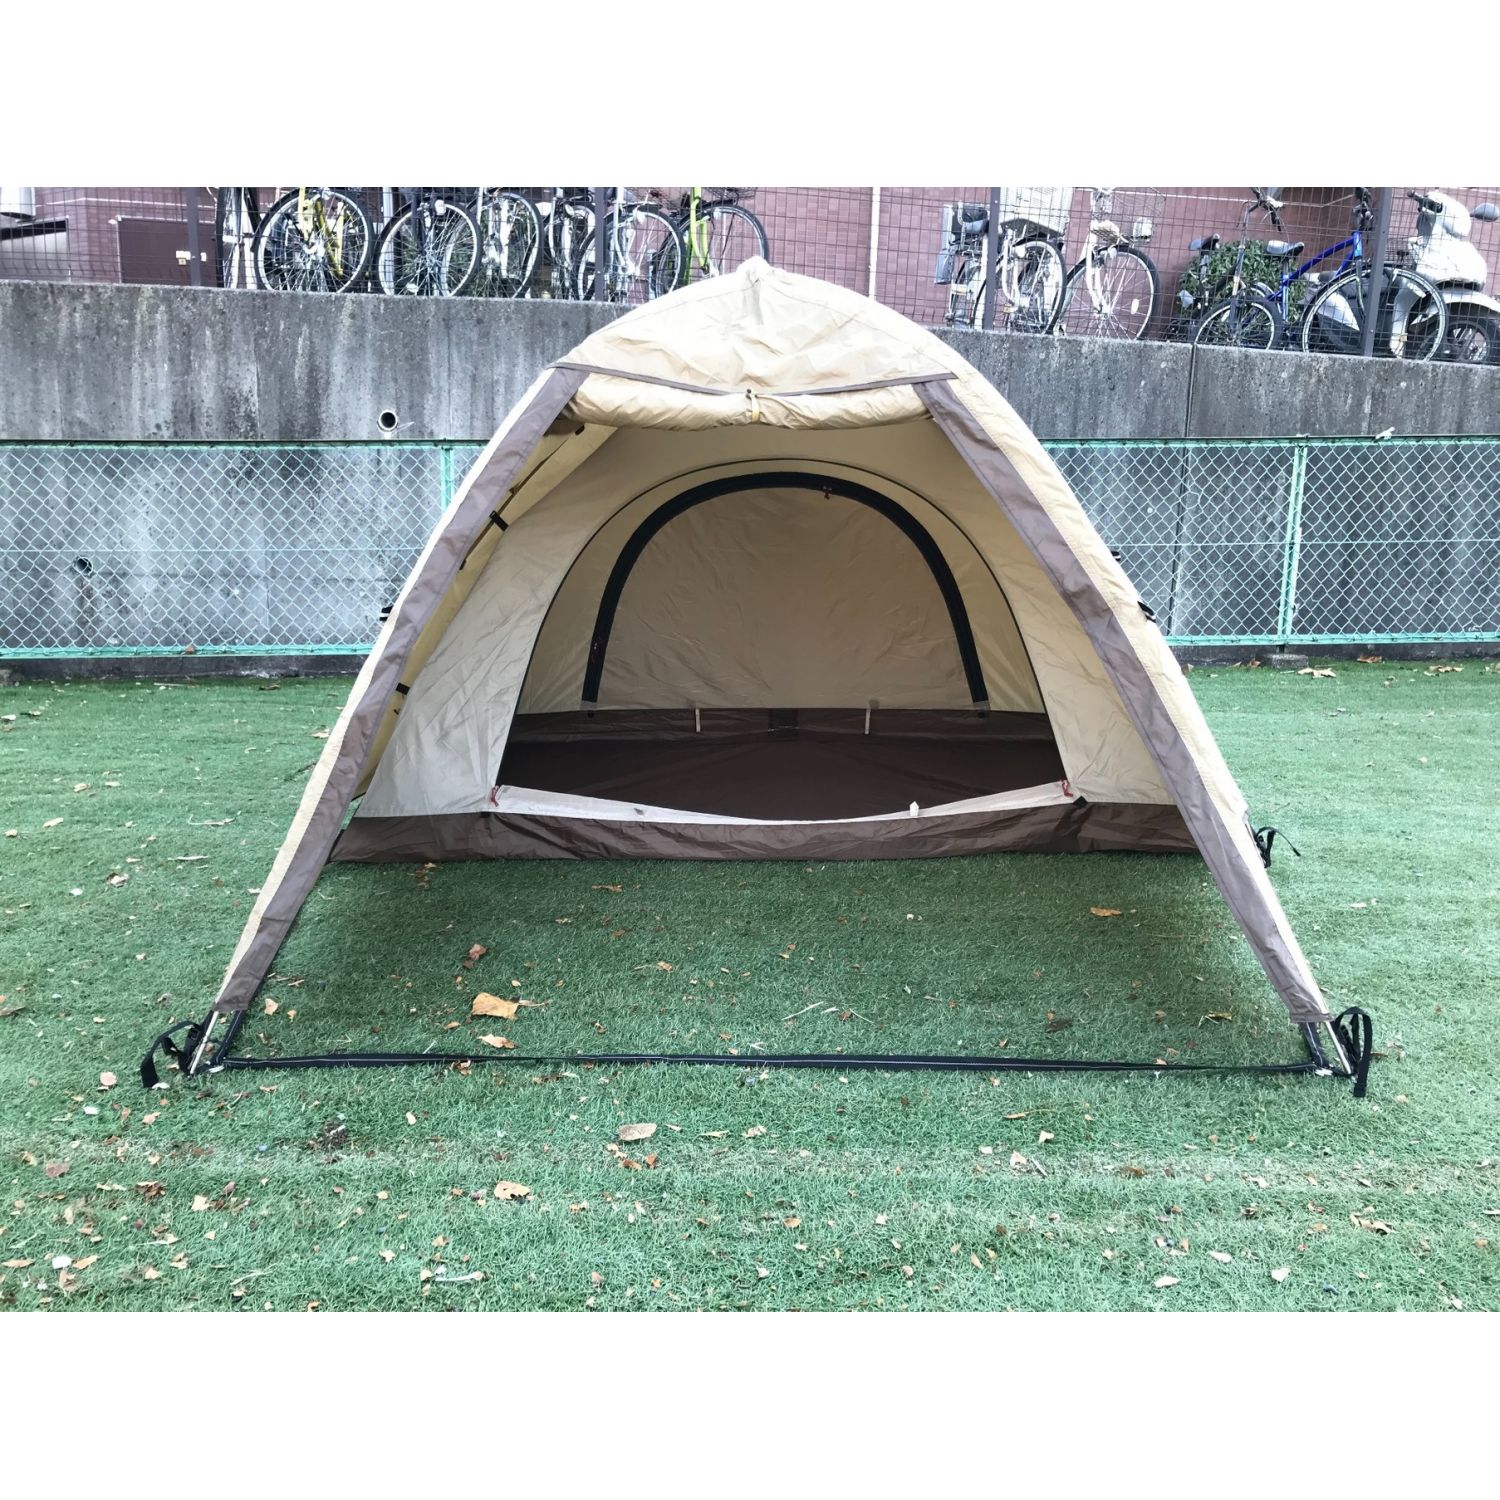 ogawa(オガワ) アウトドア キャンプ テント ドーム型 ステイシー ST-2 【2~3人用】 サンドベージュ 2616-80 テント